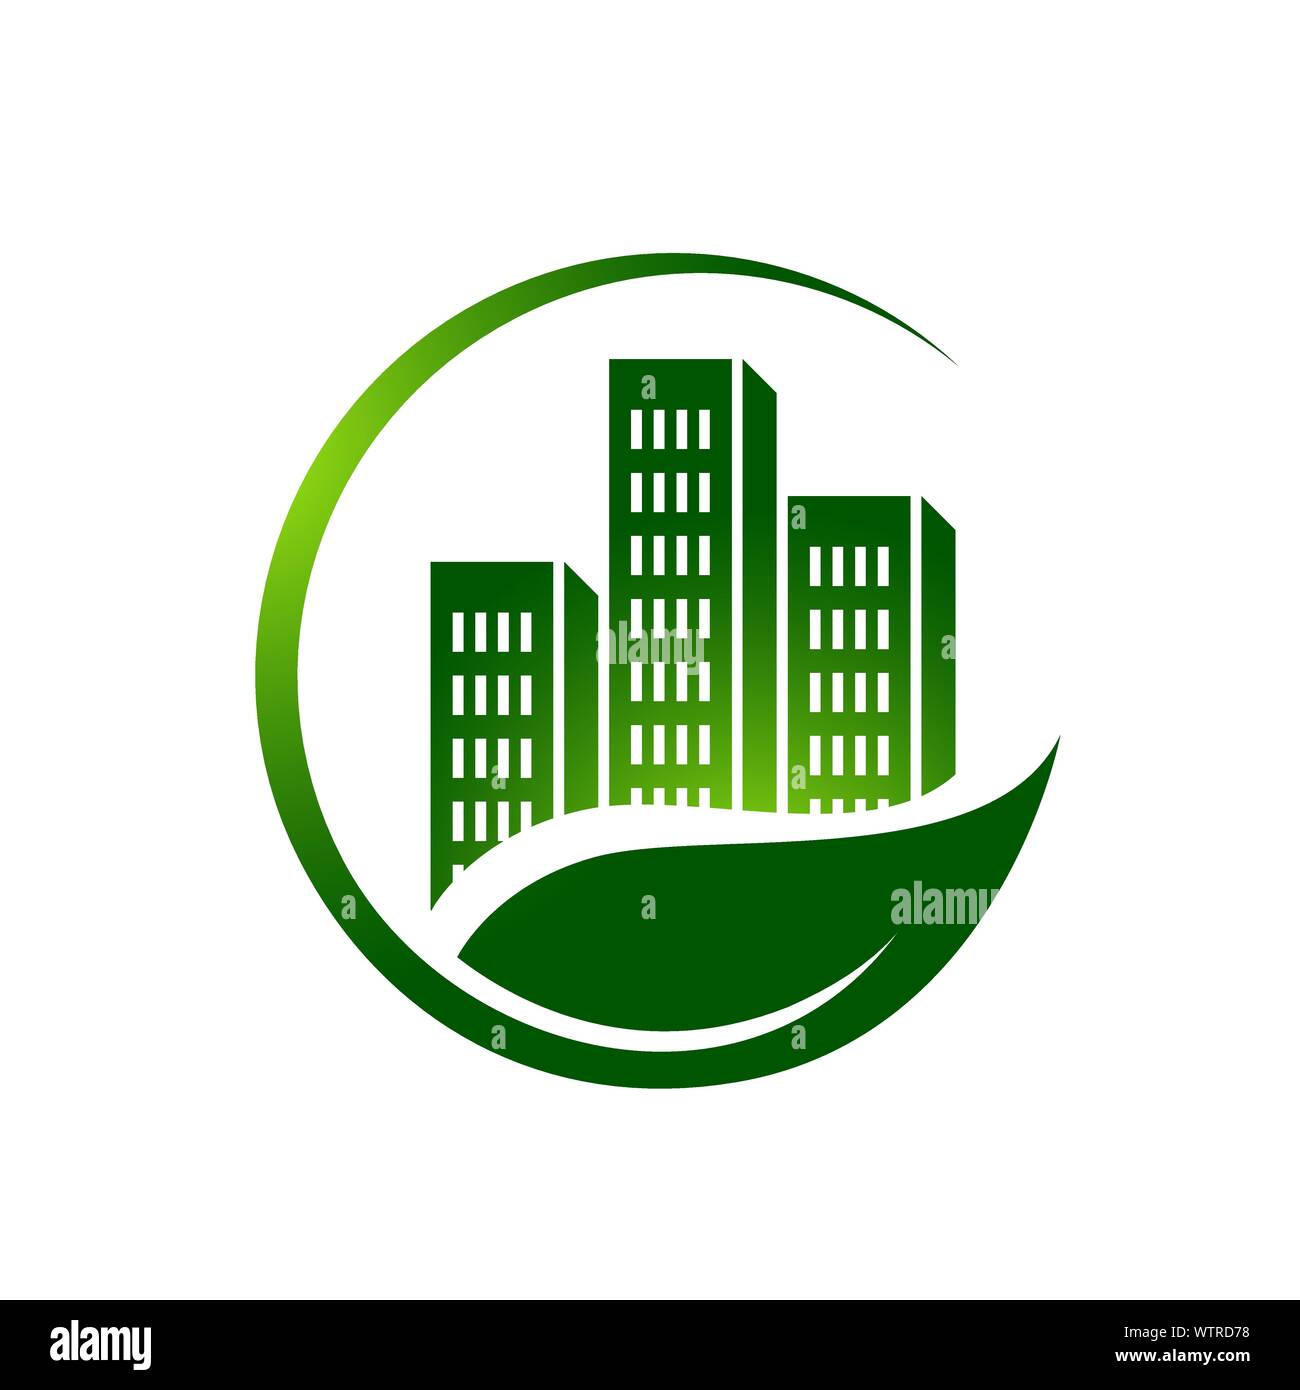 L'environnement accueil Eco green house design logo icône vecteur Illustration de Vecteur